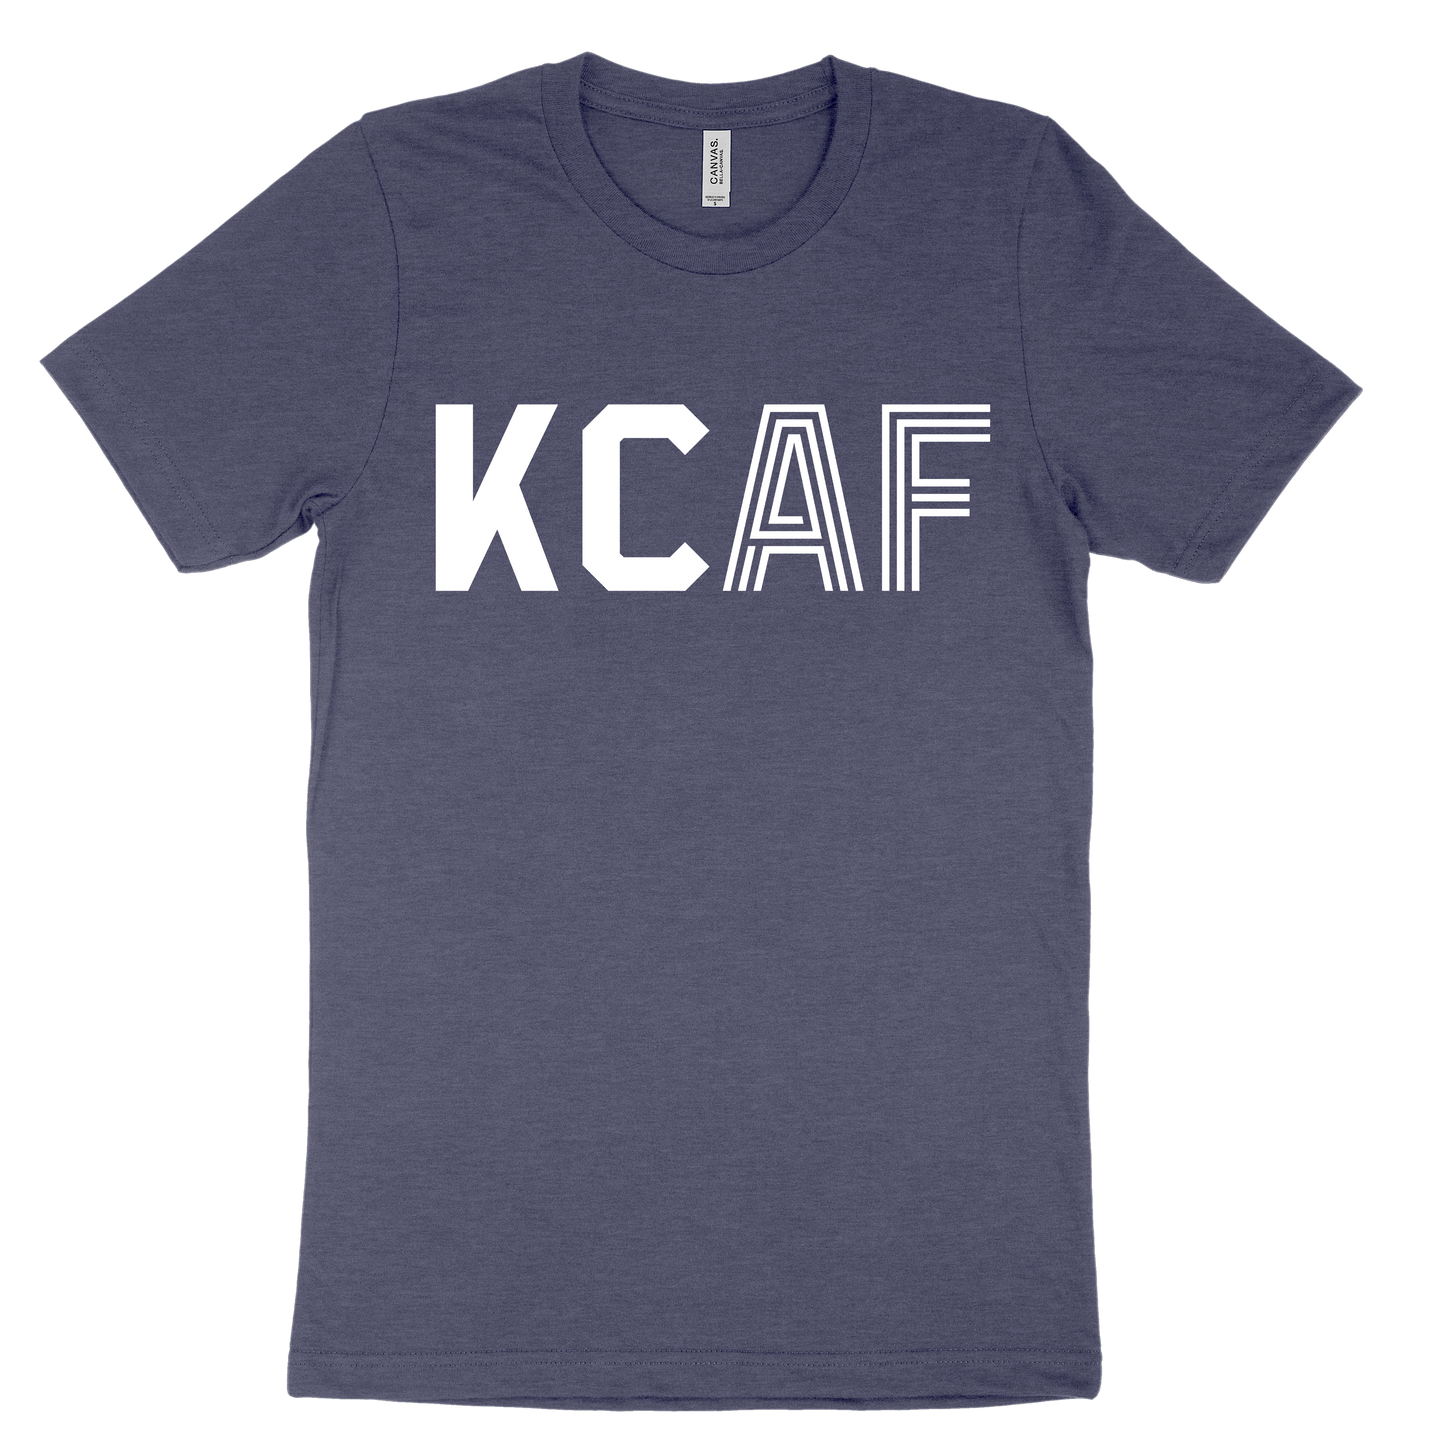 KCAF Tee - Navy